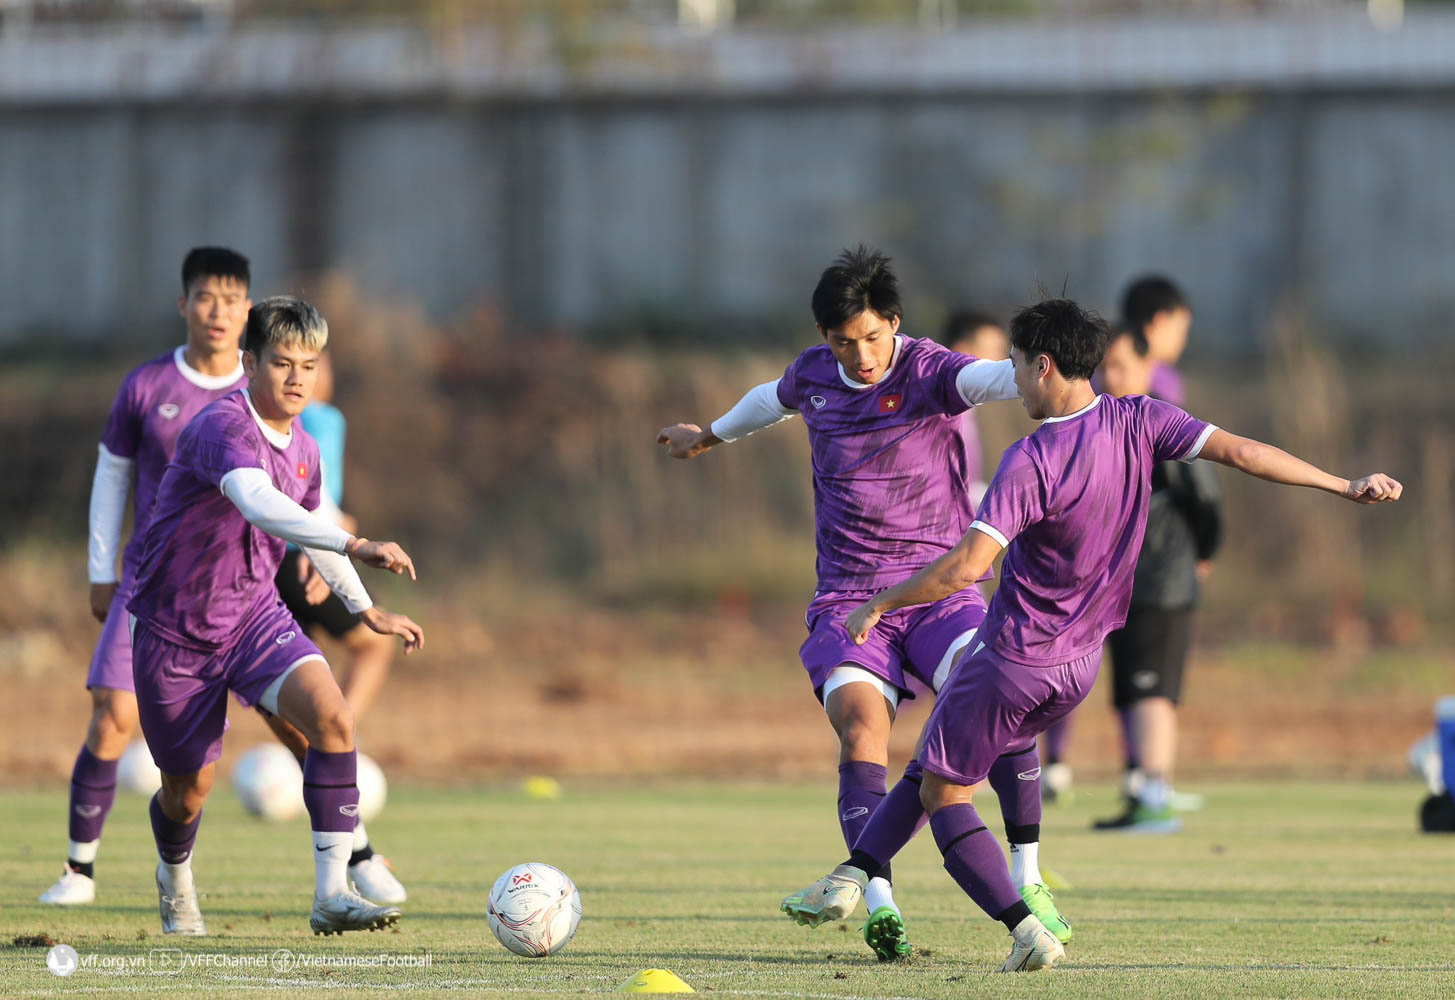 HLV Park Hang-seo tập trung rèn thể lực cho Phan Văn Đức trước trận đấu với Lào - Ảnh 8.